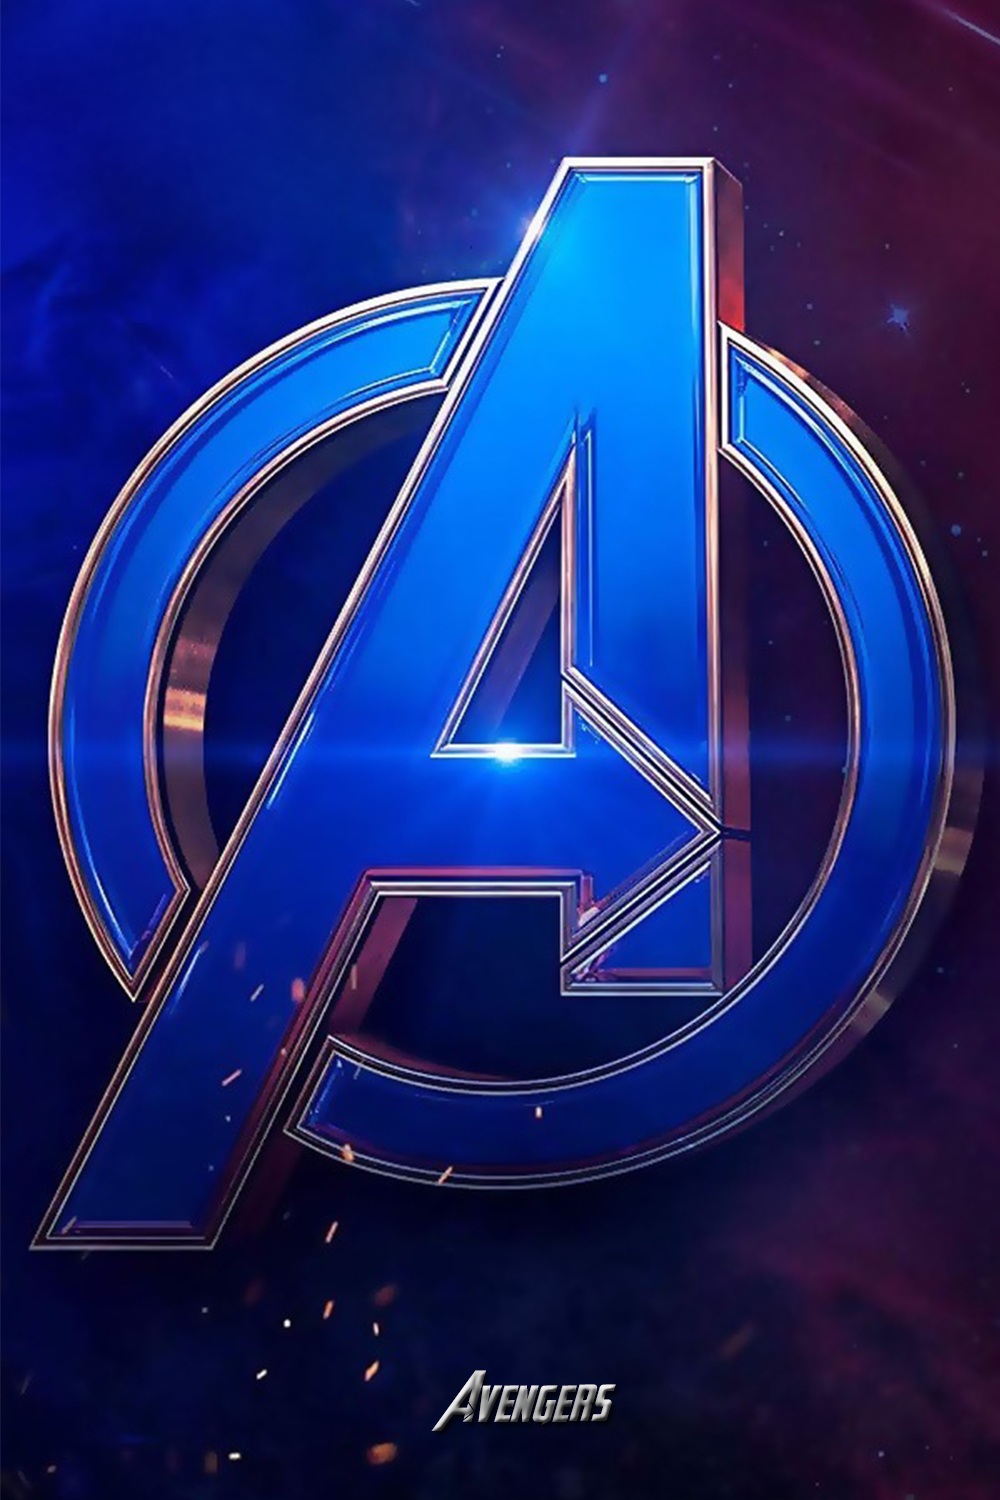 avengers logo Wallpaper iphone. Marvel wallpaper hd, Avengers wallpaper, Logo wallpaper hd